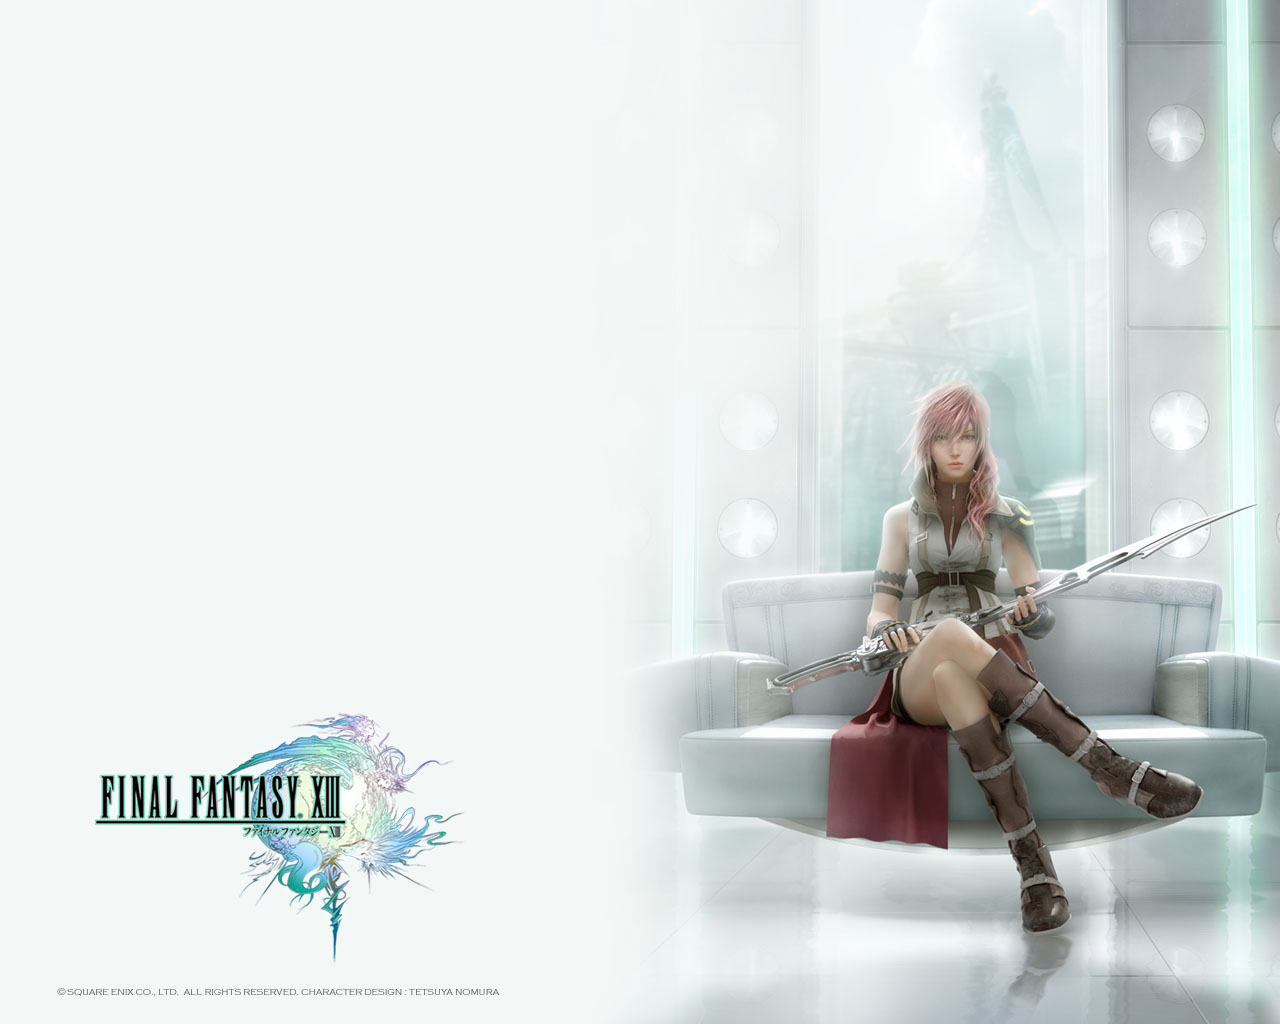 Fond d'ecran Final Fantasy n13